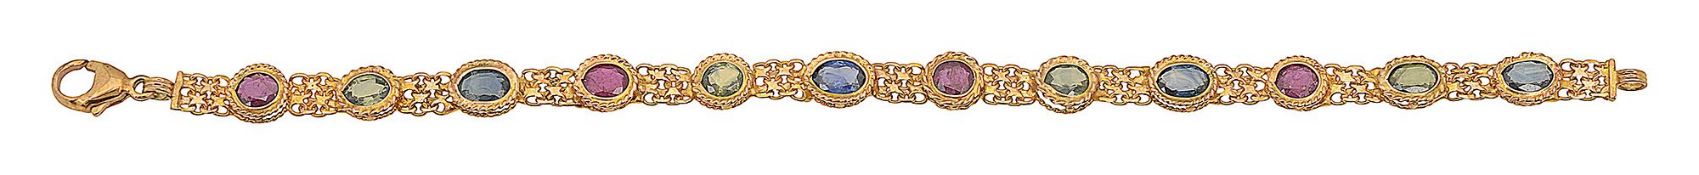 A multi gem-set bracelet